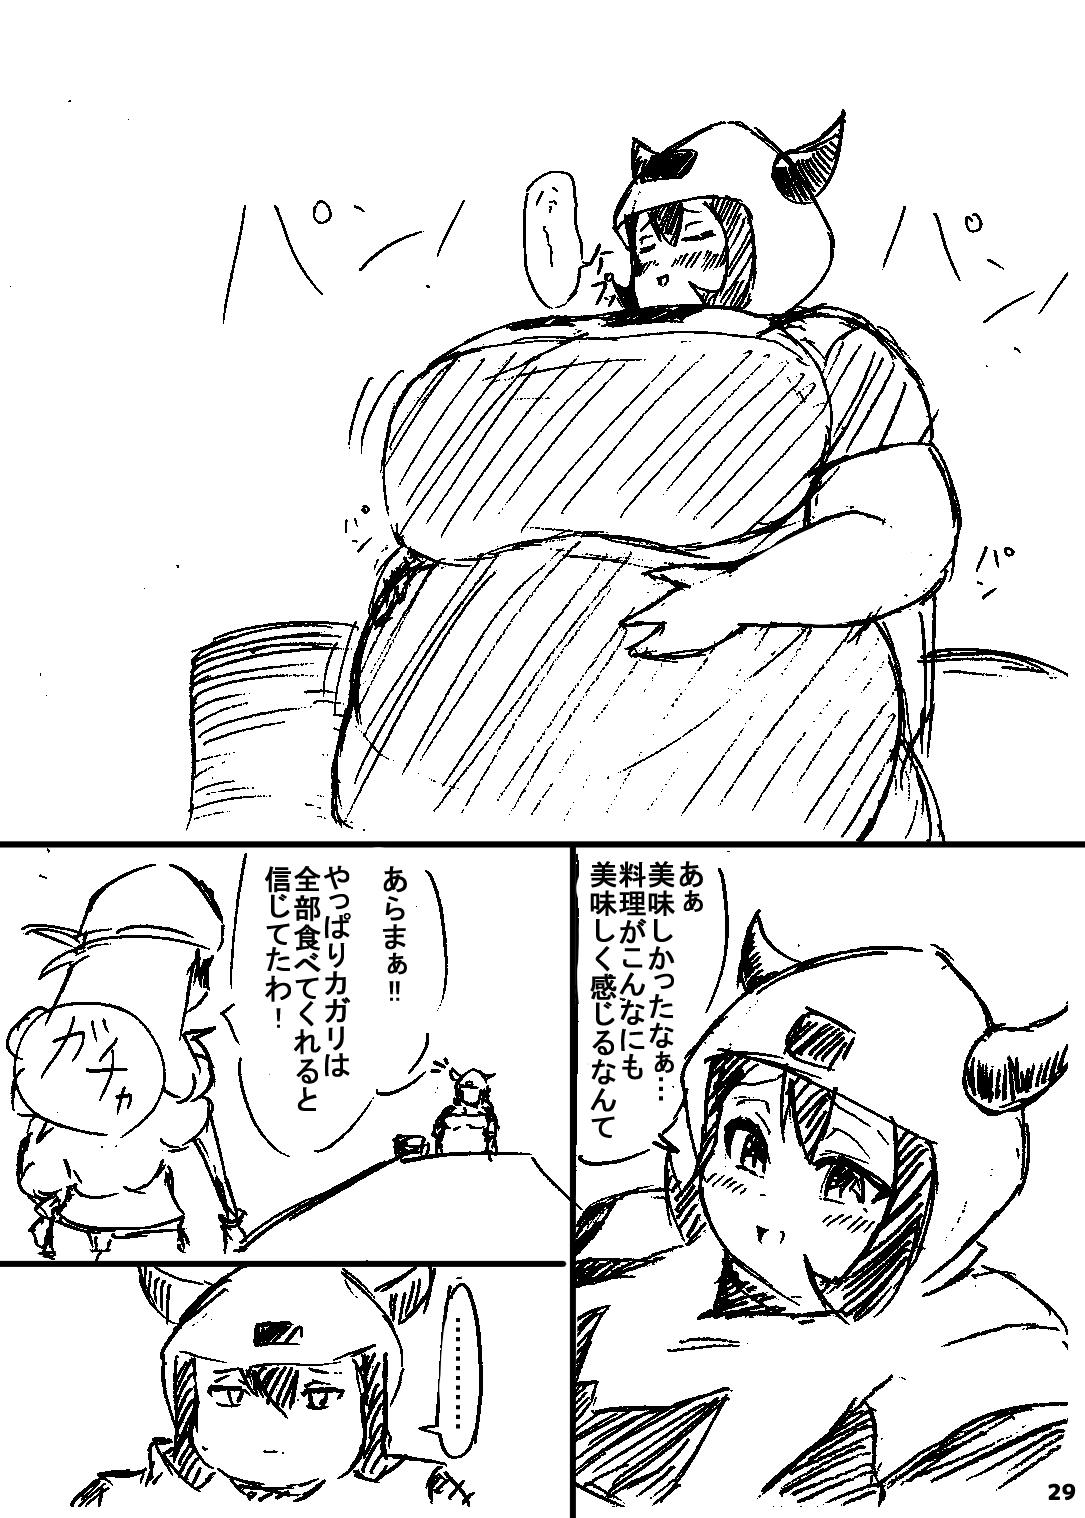 ポケスペカガリ肥満化漫画 27